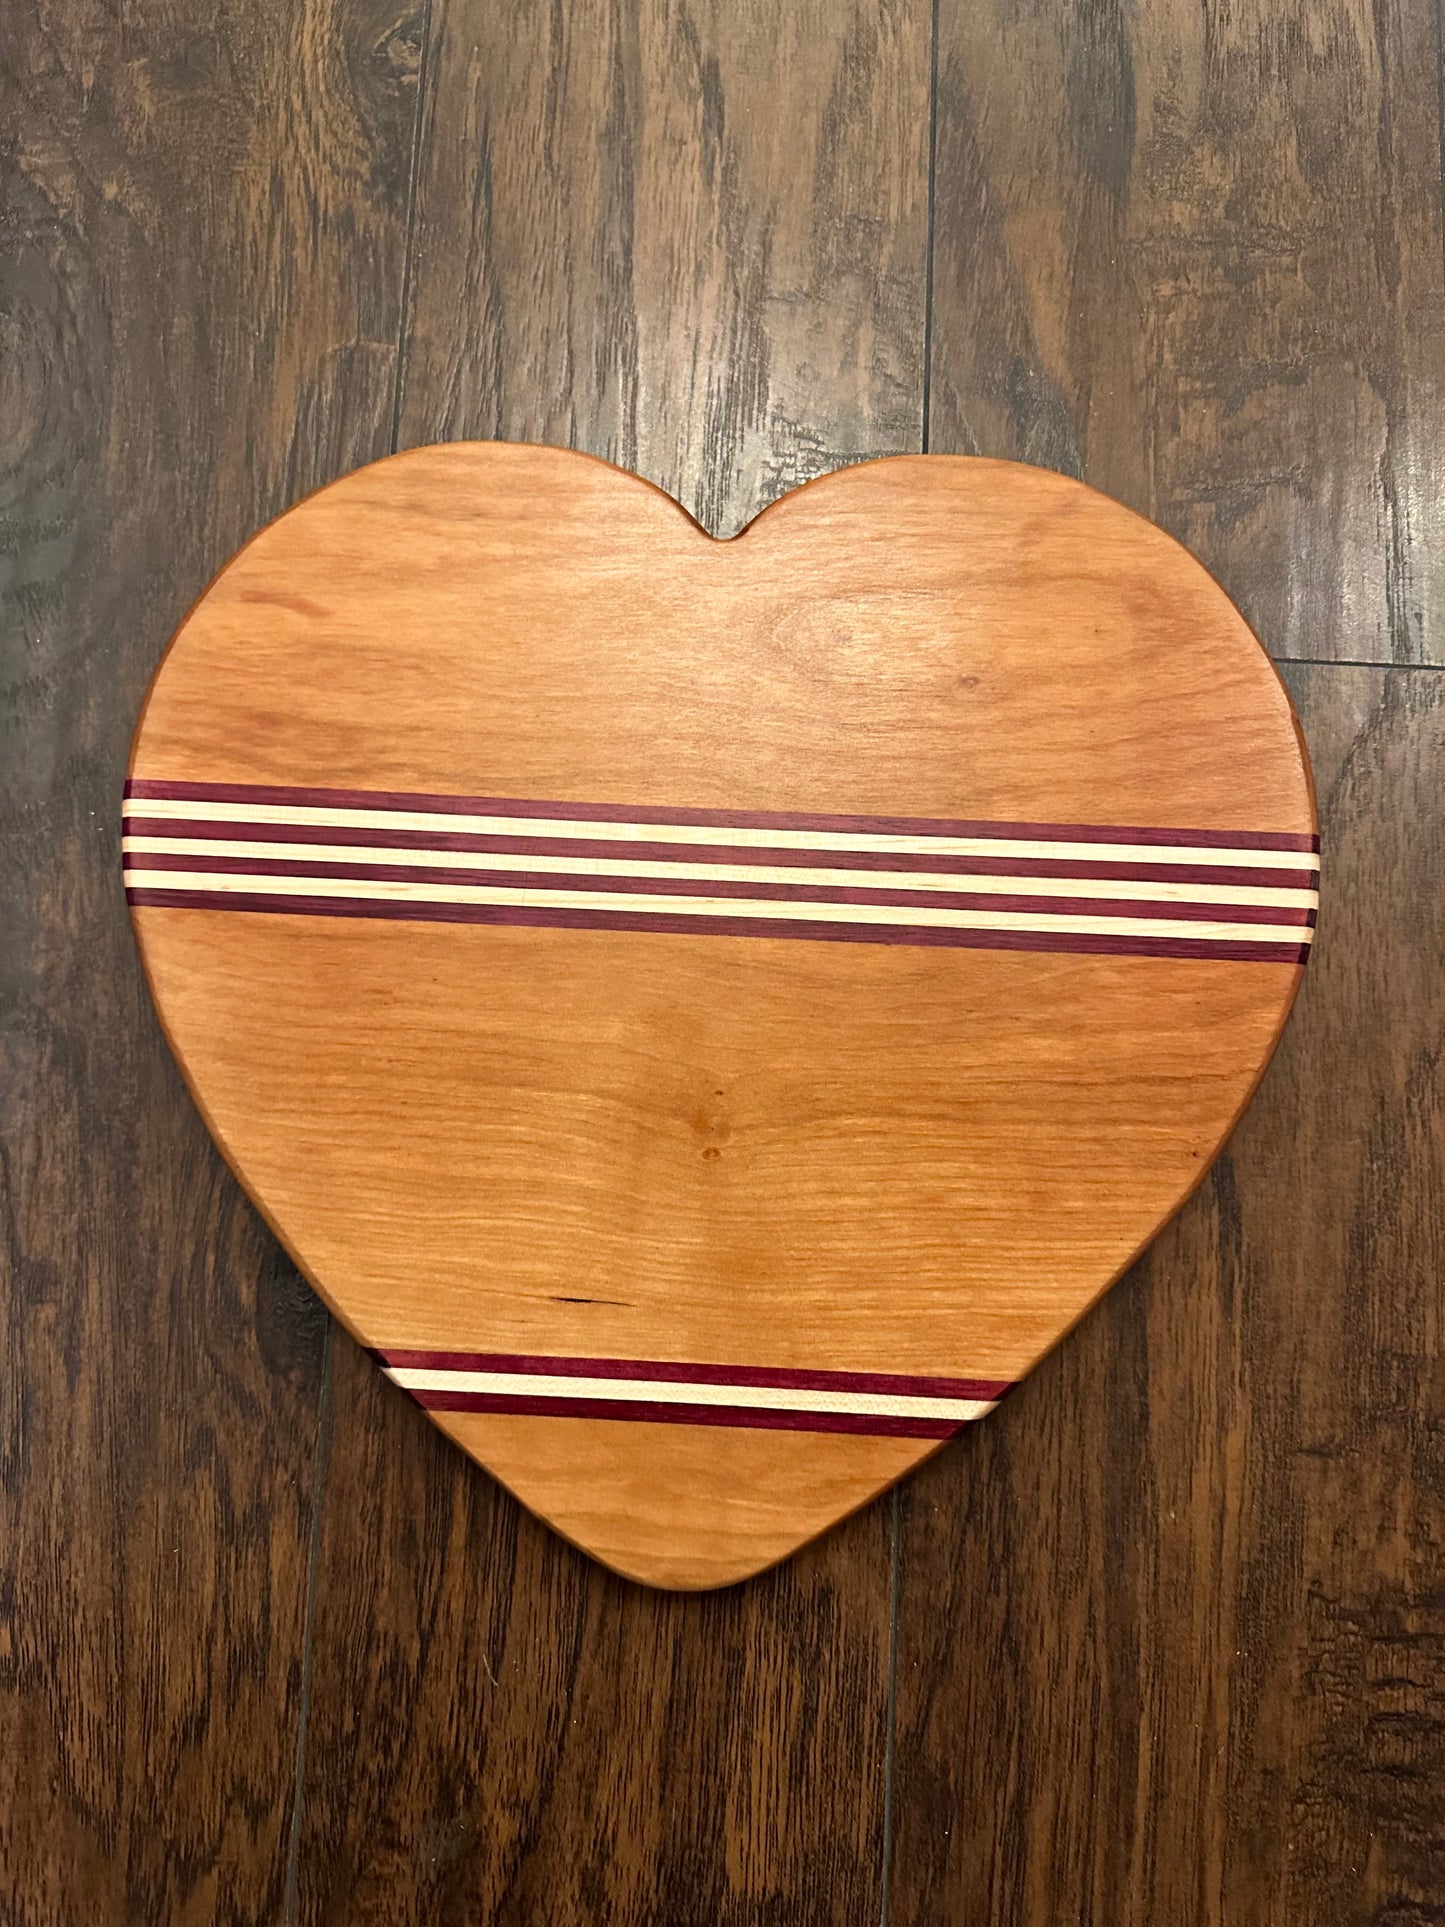 Heart shape boards